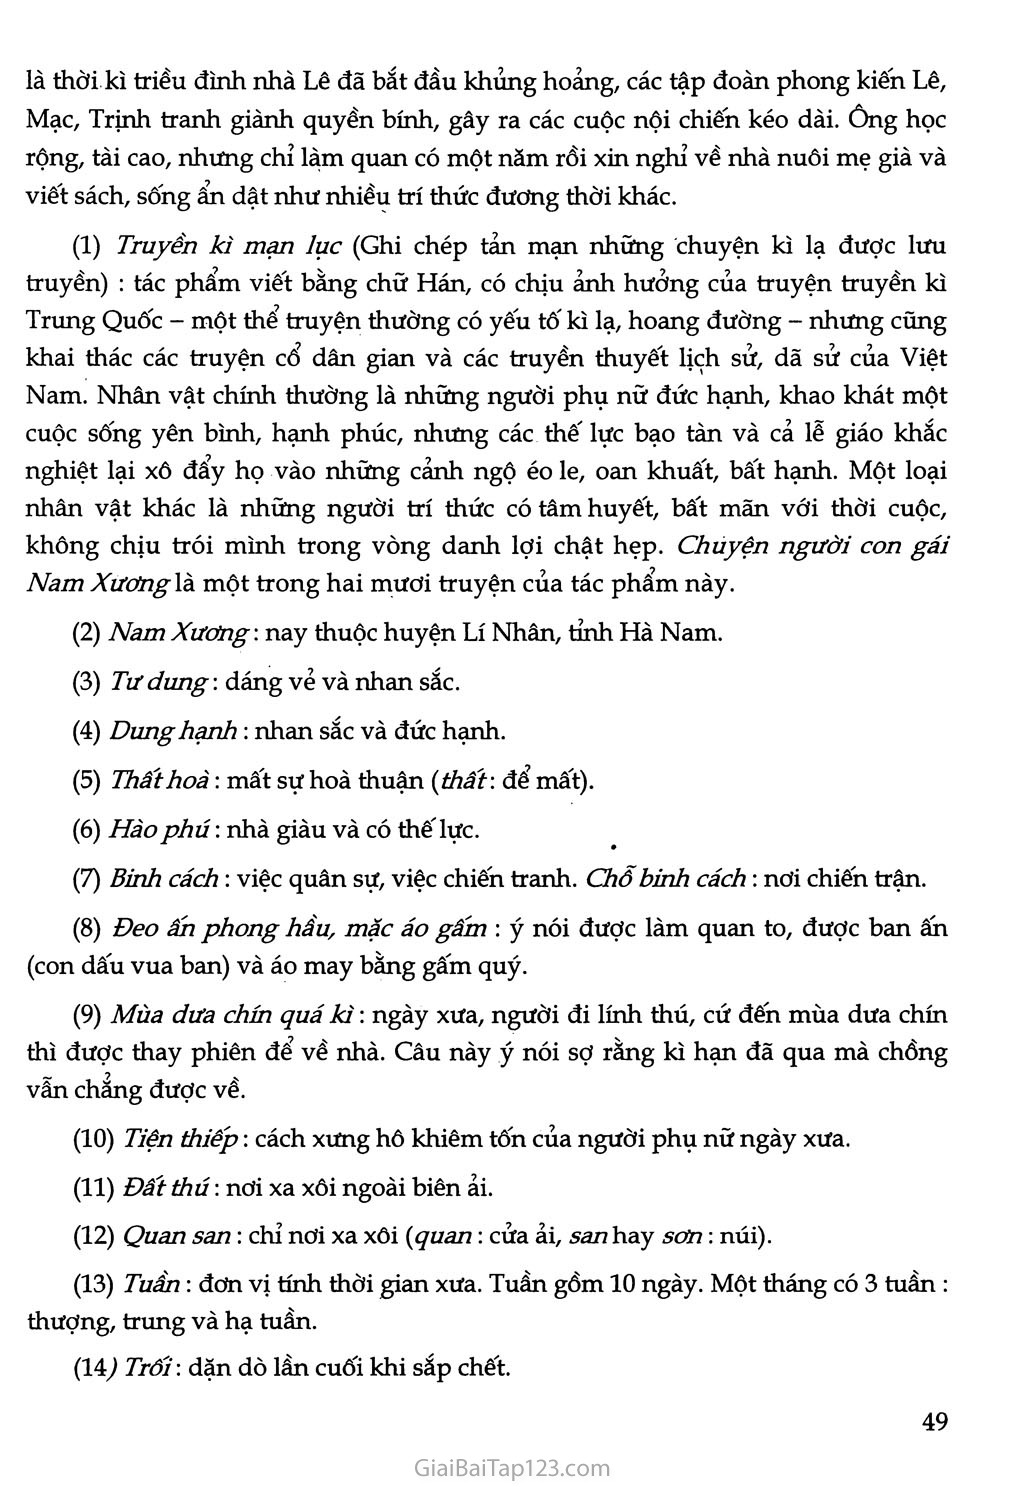 Chuyện người con gái Nam Xương (trích Truyền kì mạn lục) trang 7